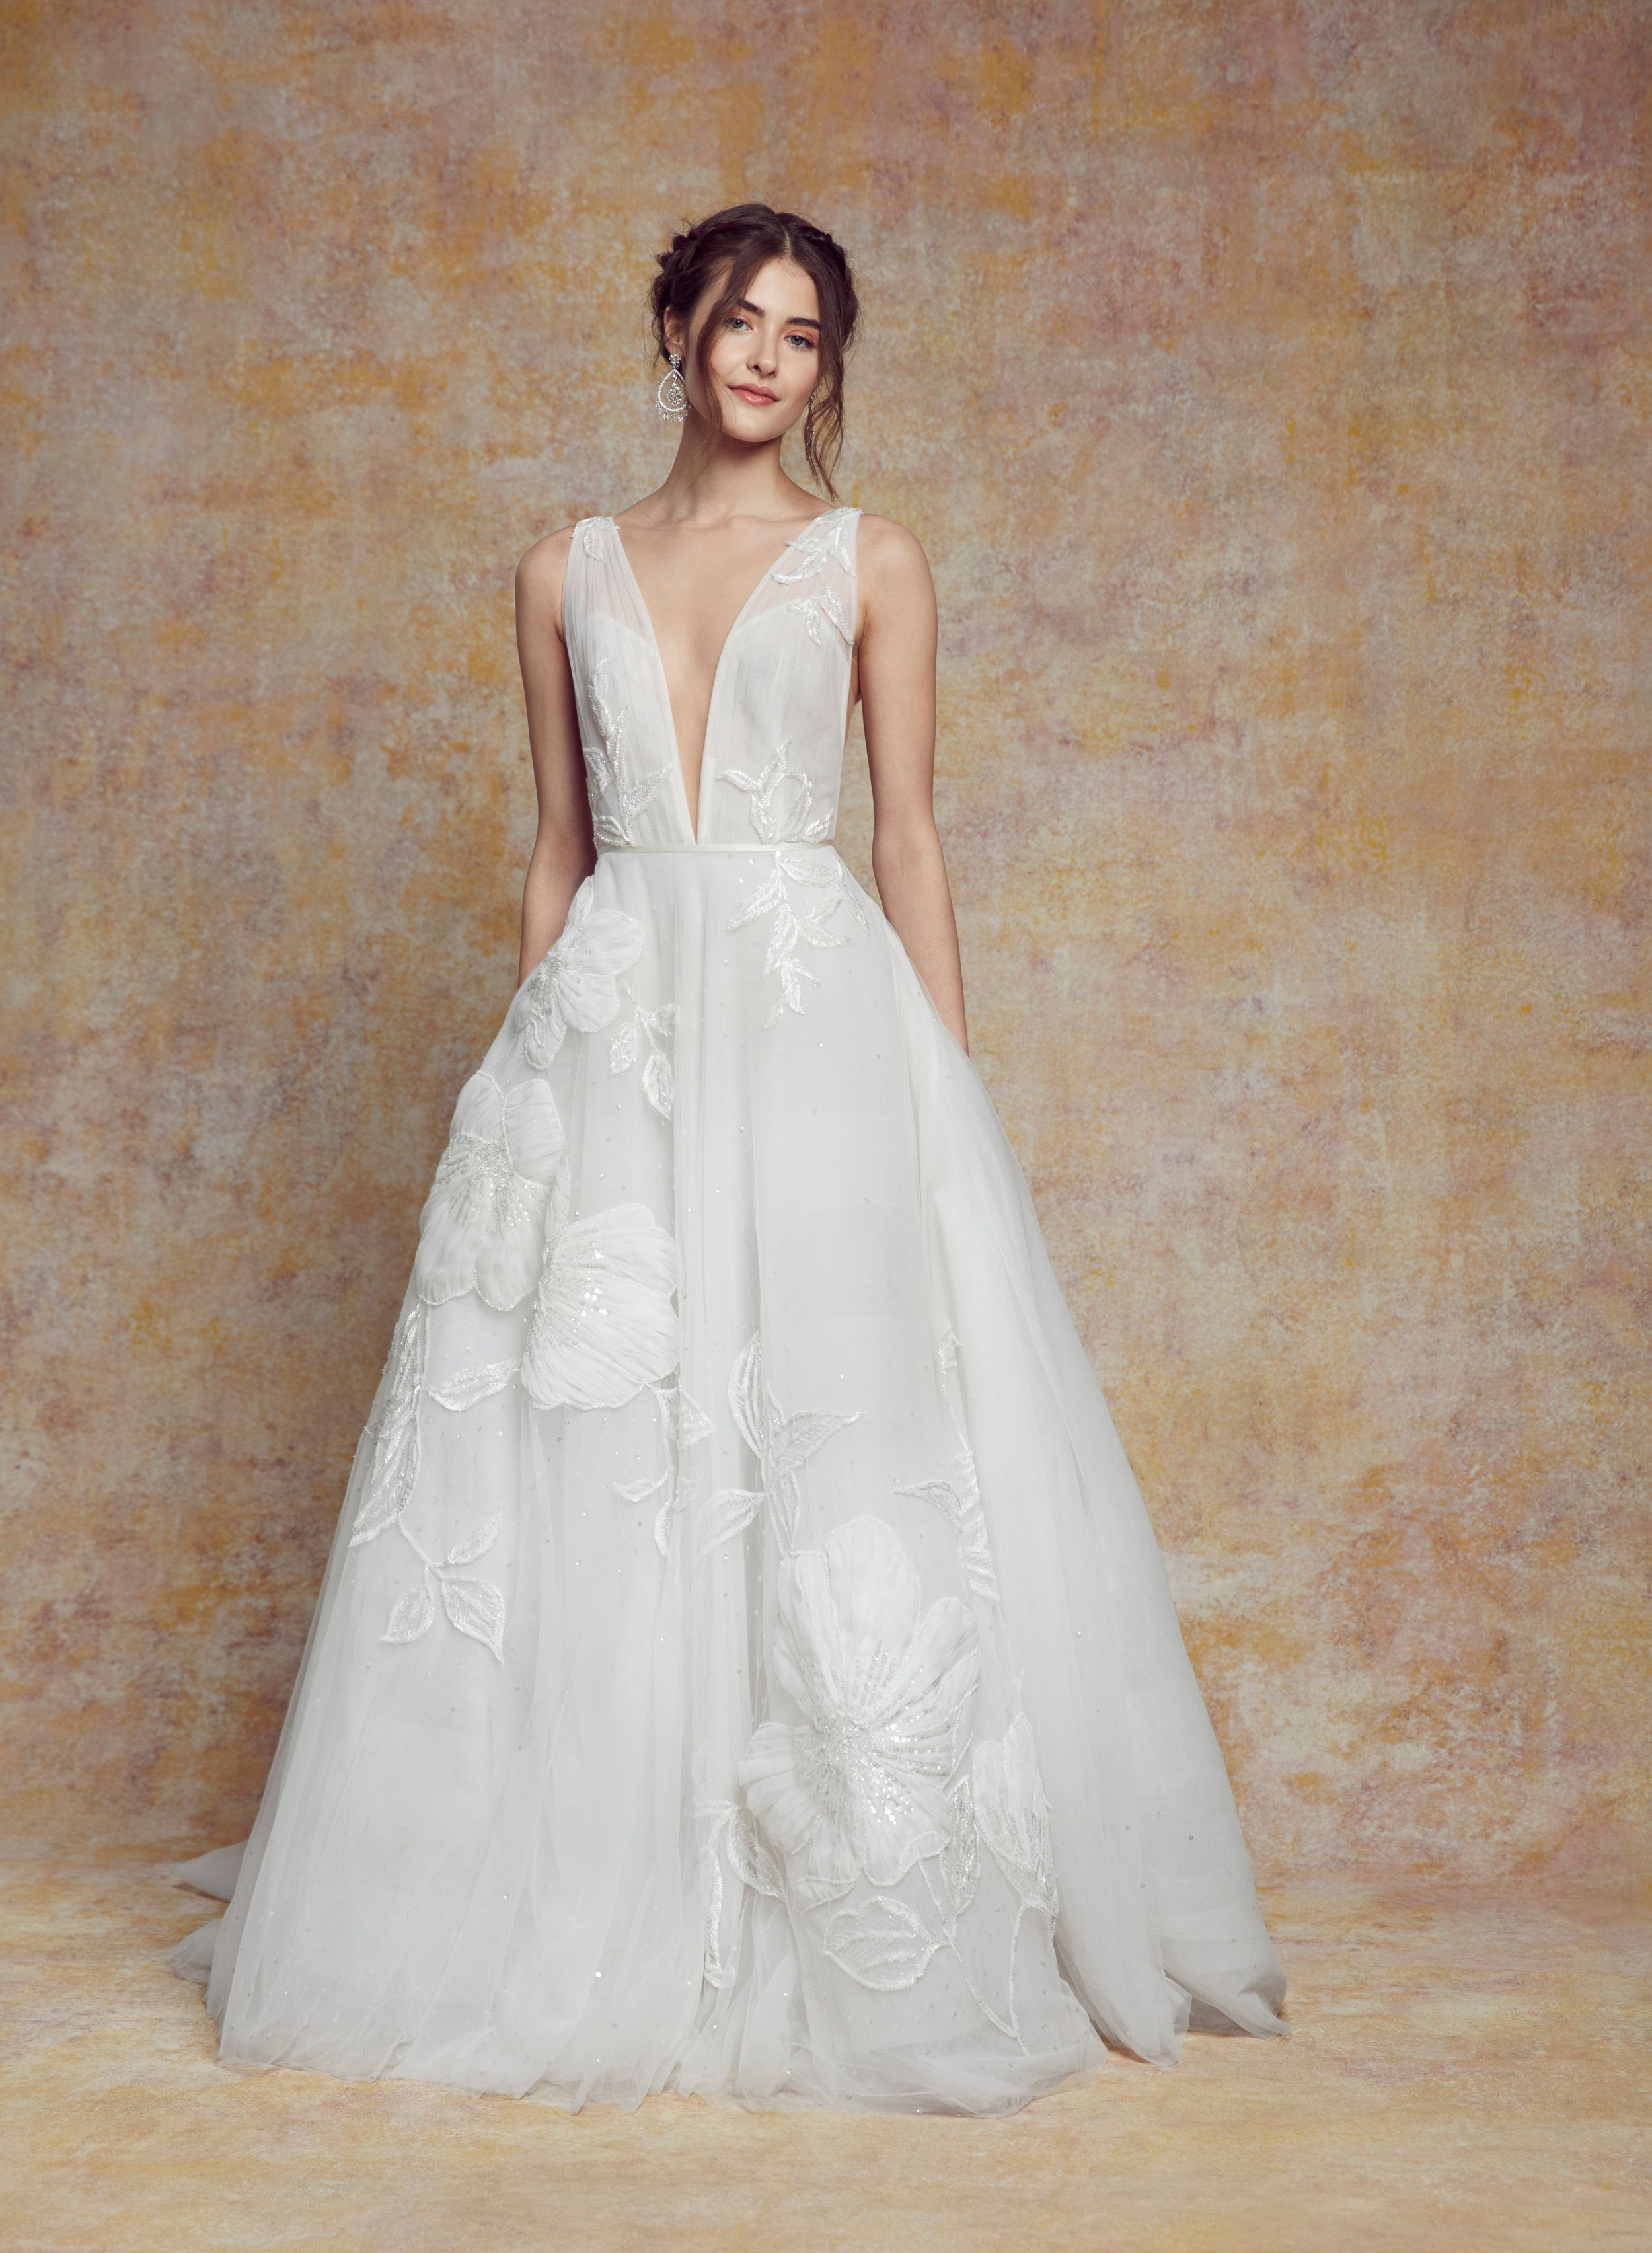 blanc-de-blanc-bridal-boutique-cleveland-dress-wedding-gown-Elle.jpeg